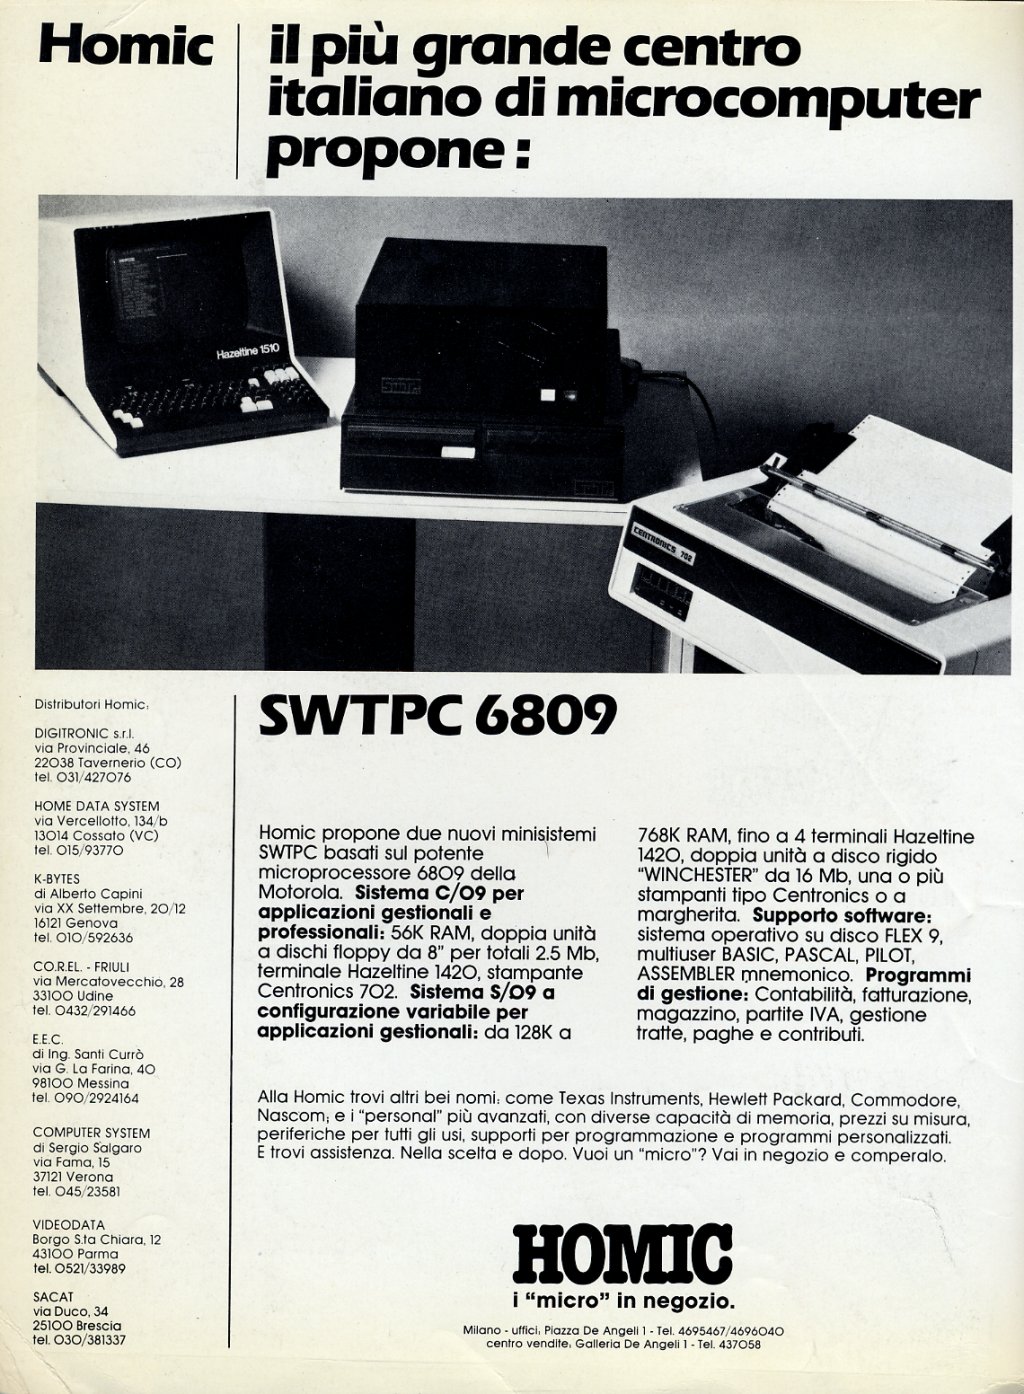 SWTPC 6809 (S09) (69K)